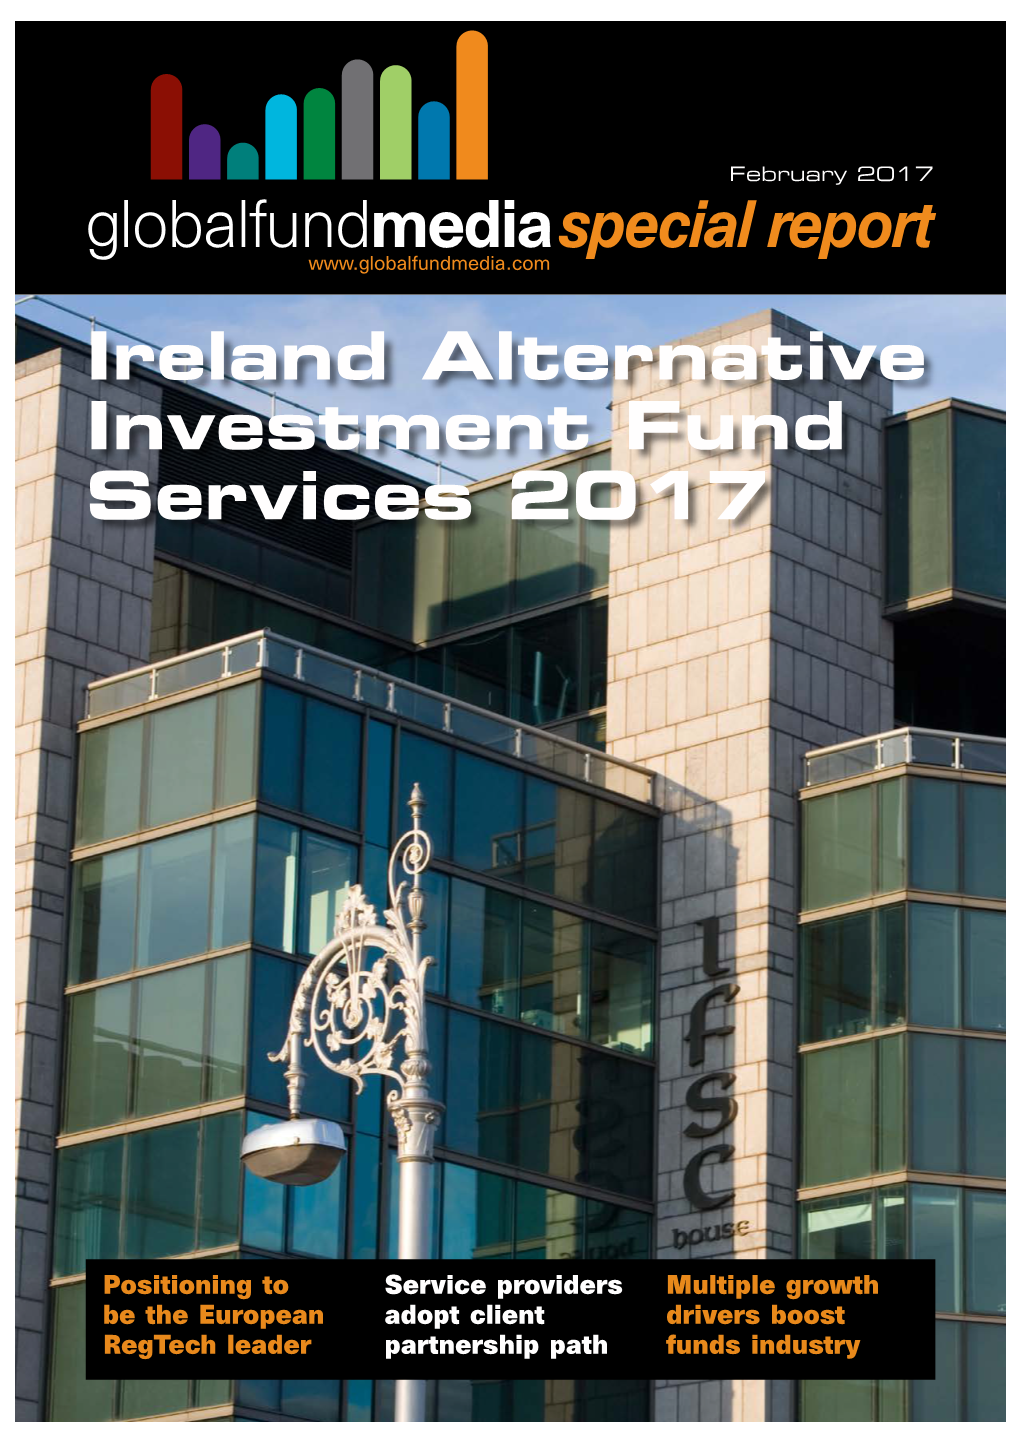 Ireland Alternative Investment Fund Services 2017